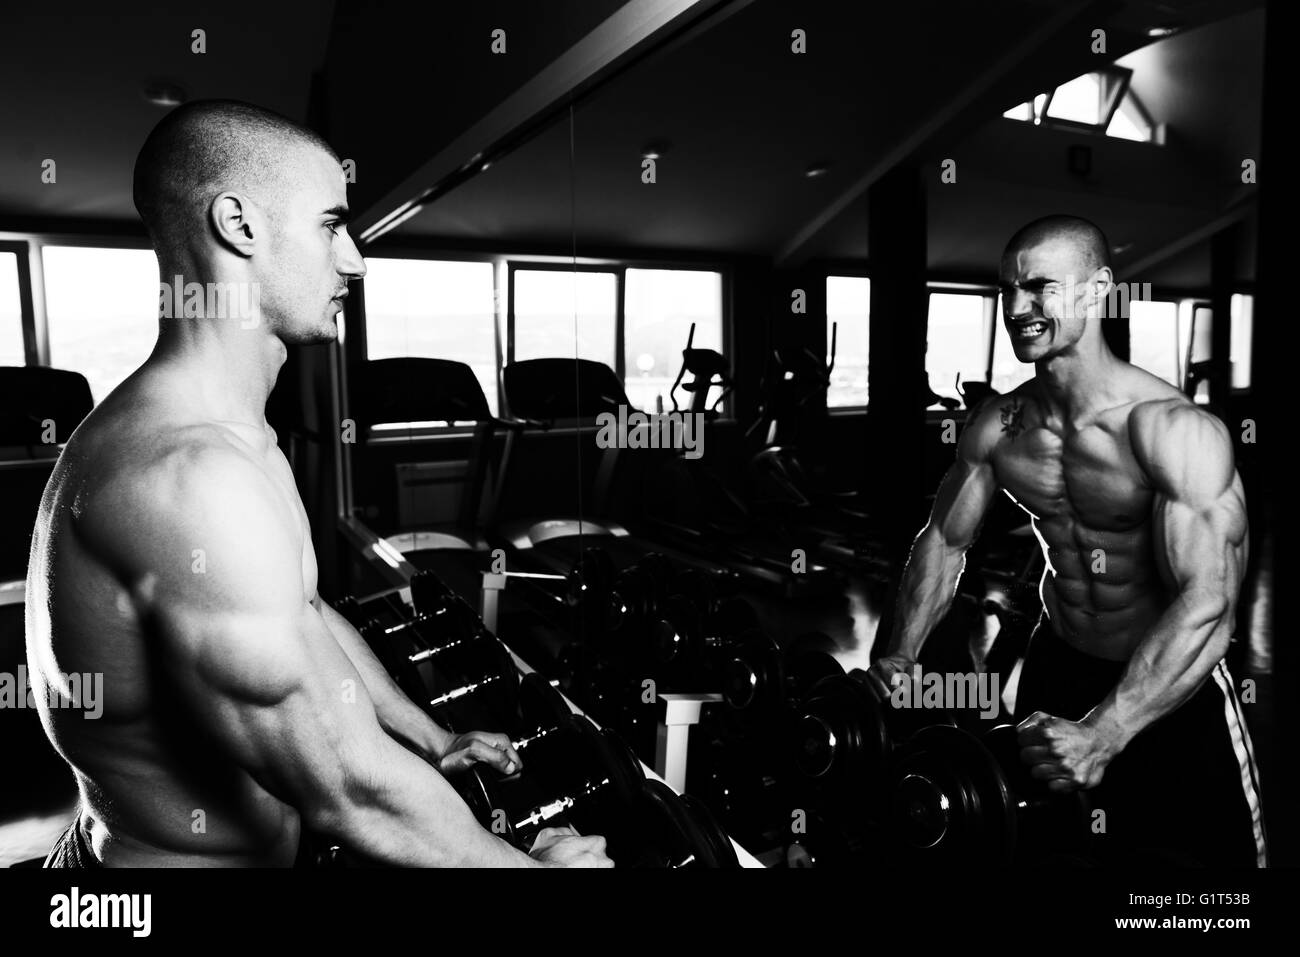 Junger Mann starke vor einem Spiegel stehen und beugen Muskeln - muskulöse athletische Bodybuilder Fitness Model posiert nach Ex Stockfoto